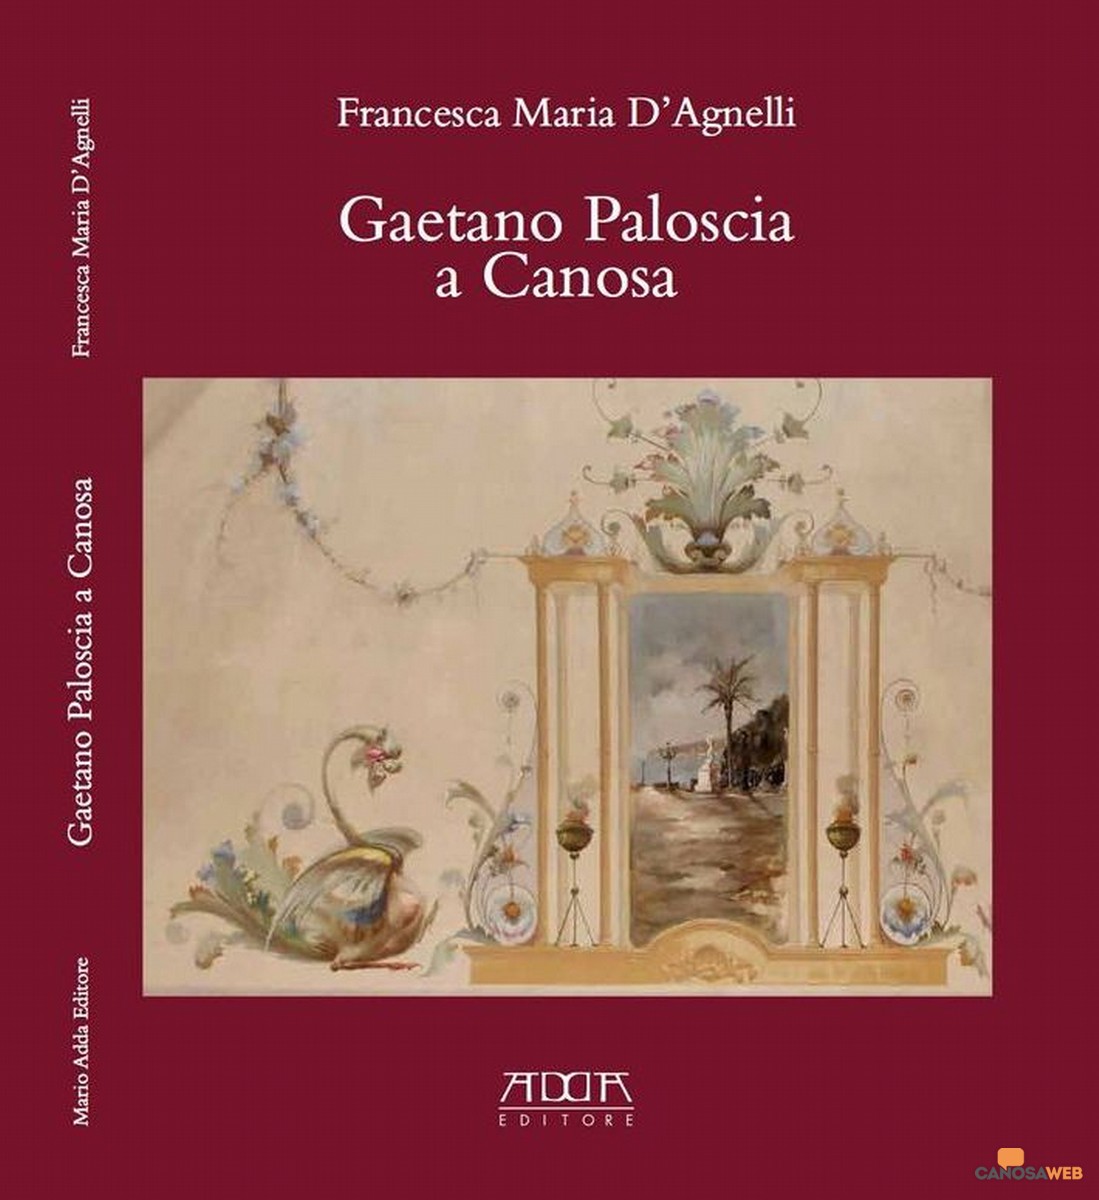 Francesca D’Agnelli  :“Gaetano Paloscia a Canosa”